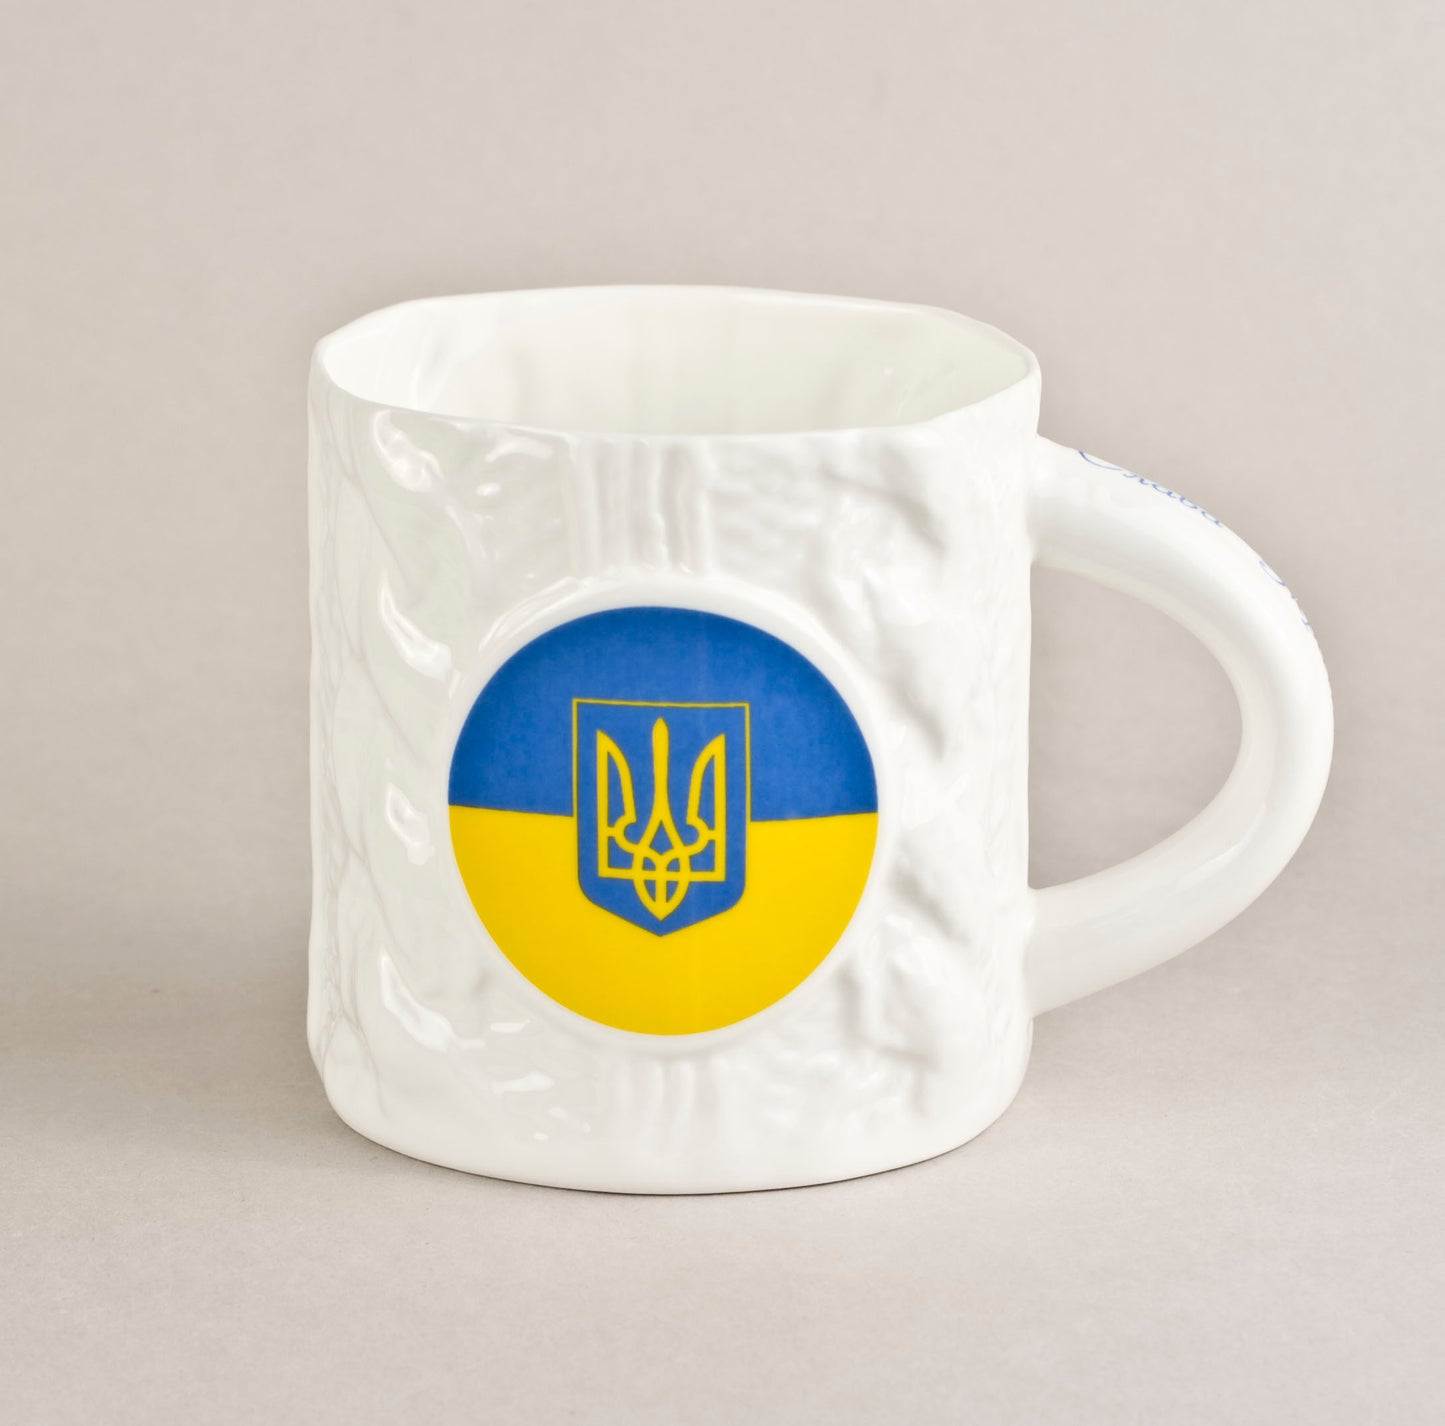 Ukraina. Knitted Tea Mug 1